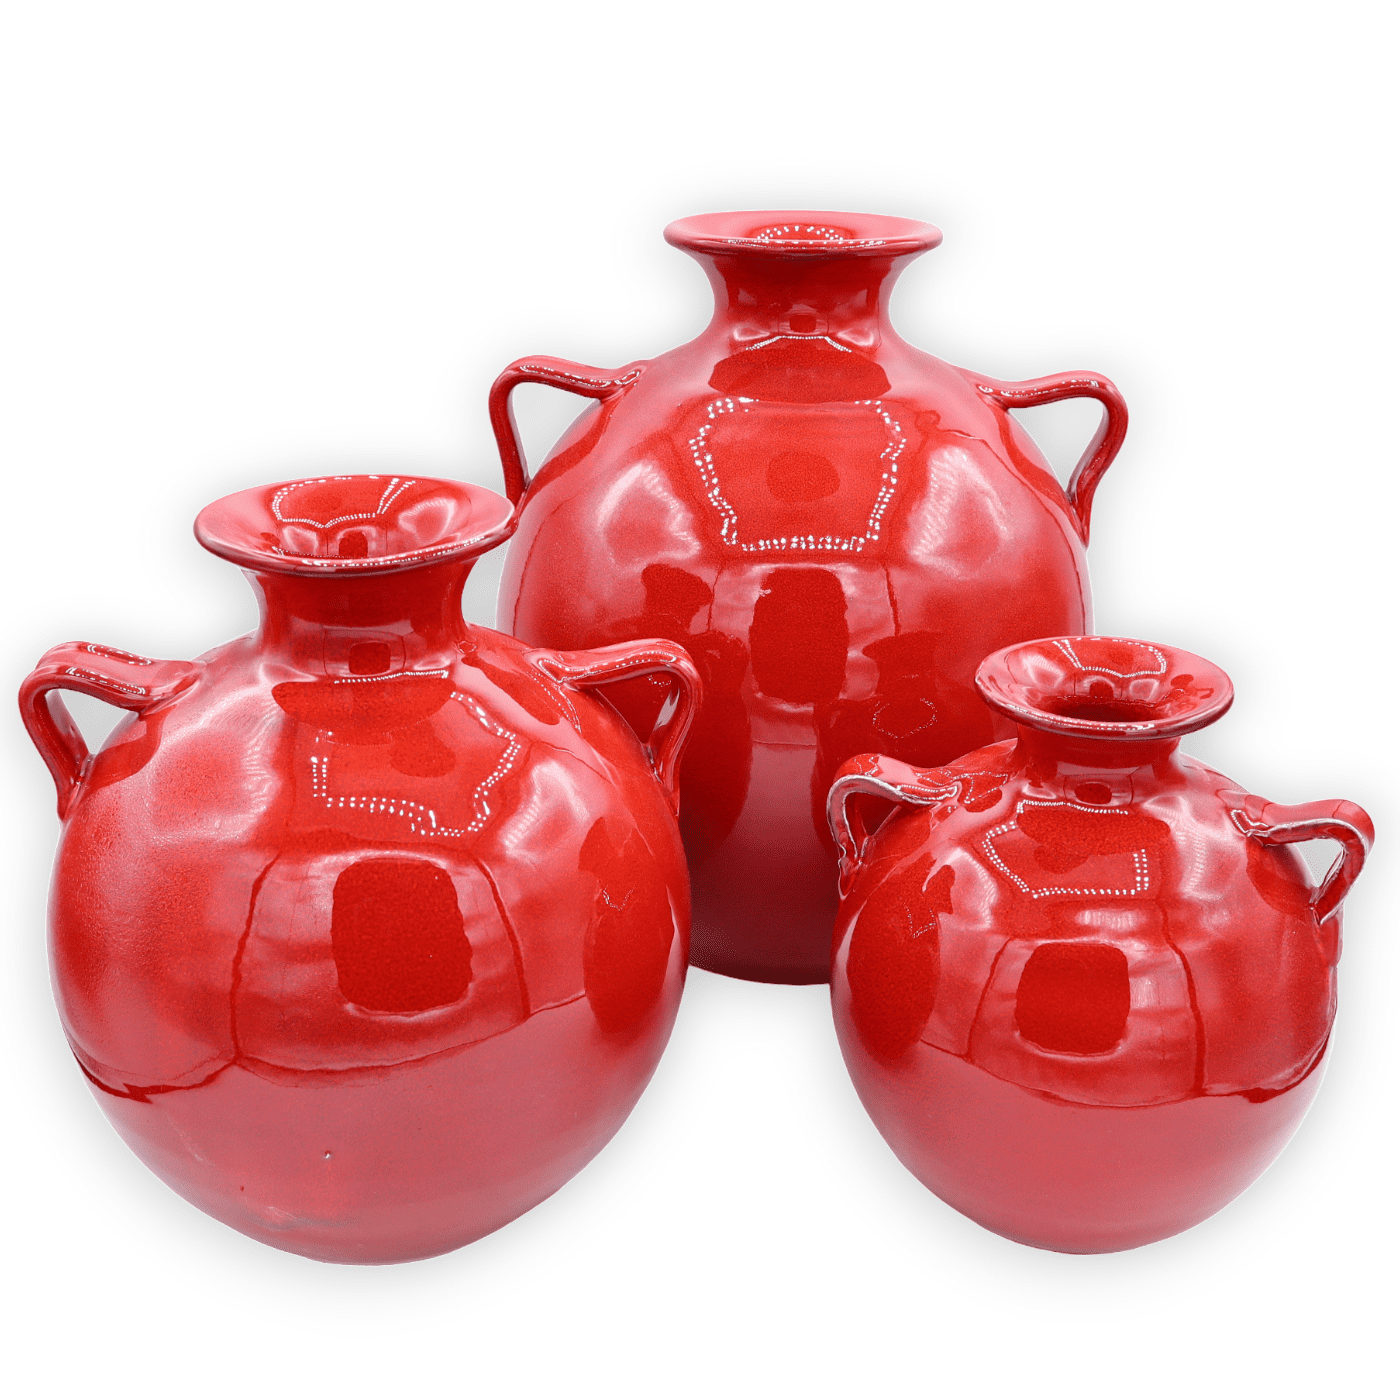 Kwaadaardig Betrokken kunstmest Amphora vaas met handgrepen, rode kleur, verkrijgbaar in drie maten, (1st)  GESELECTEERDE KLEURENOPTIE Kleine maat